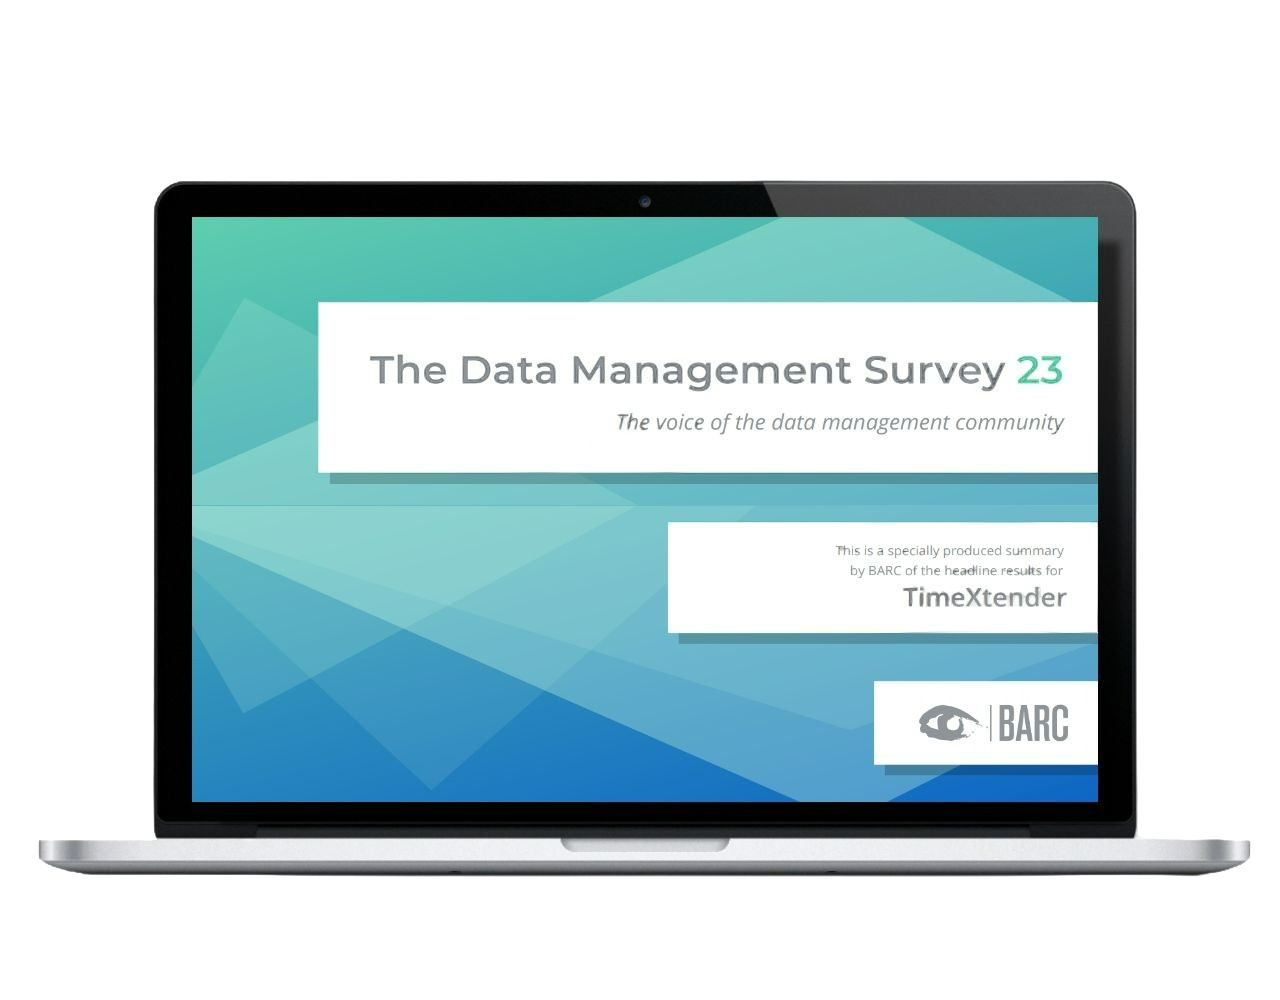 The Data Management Survey 23